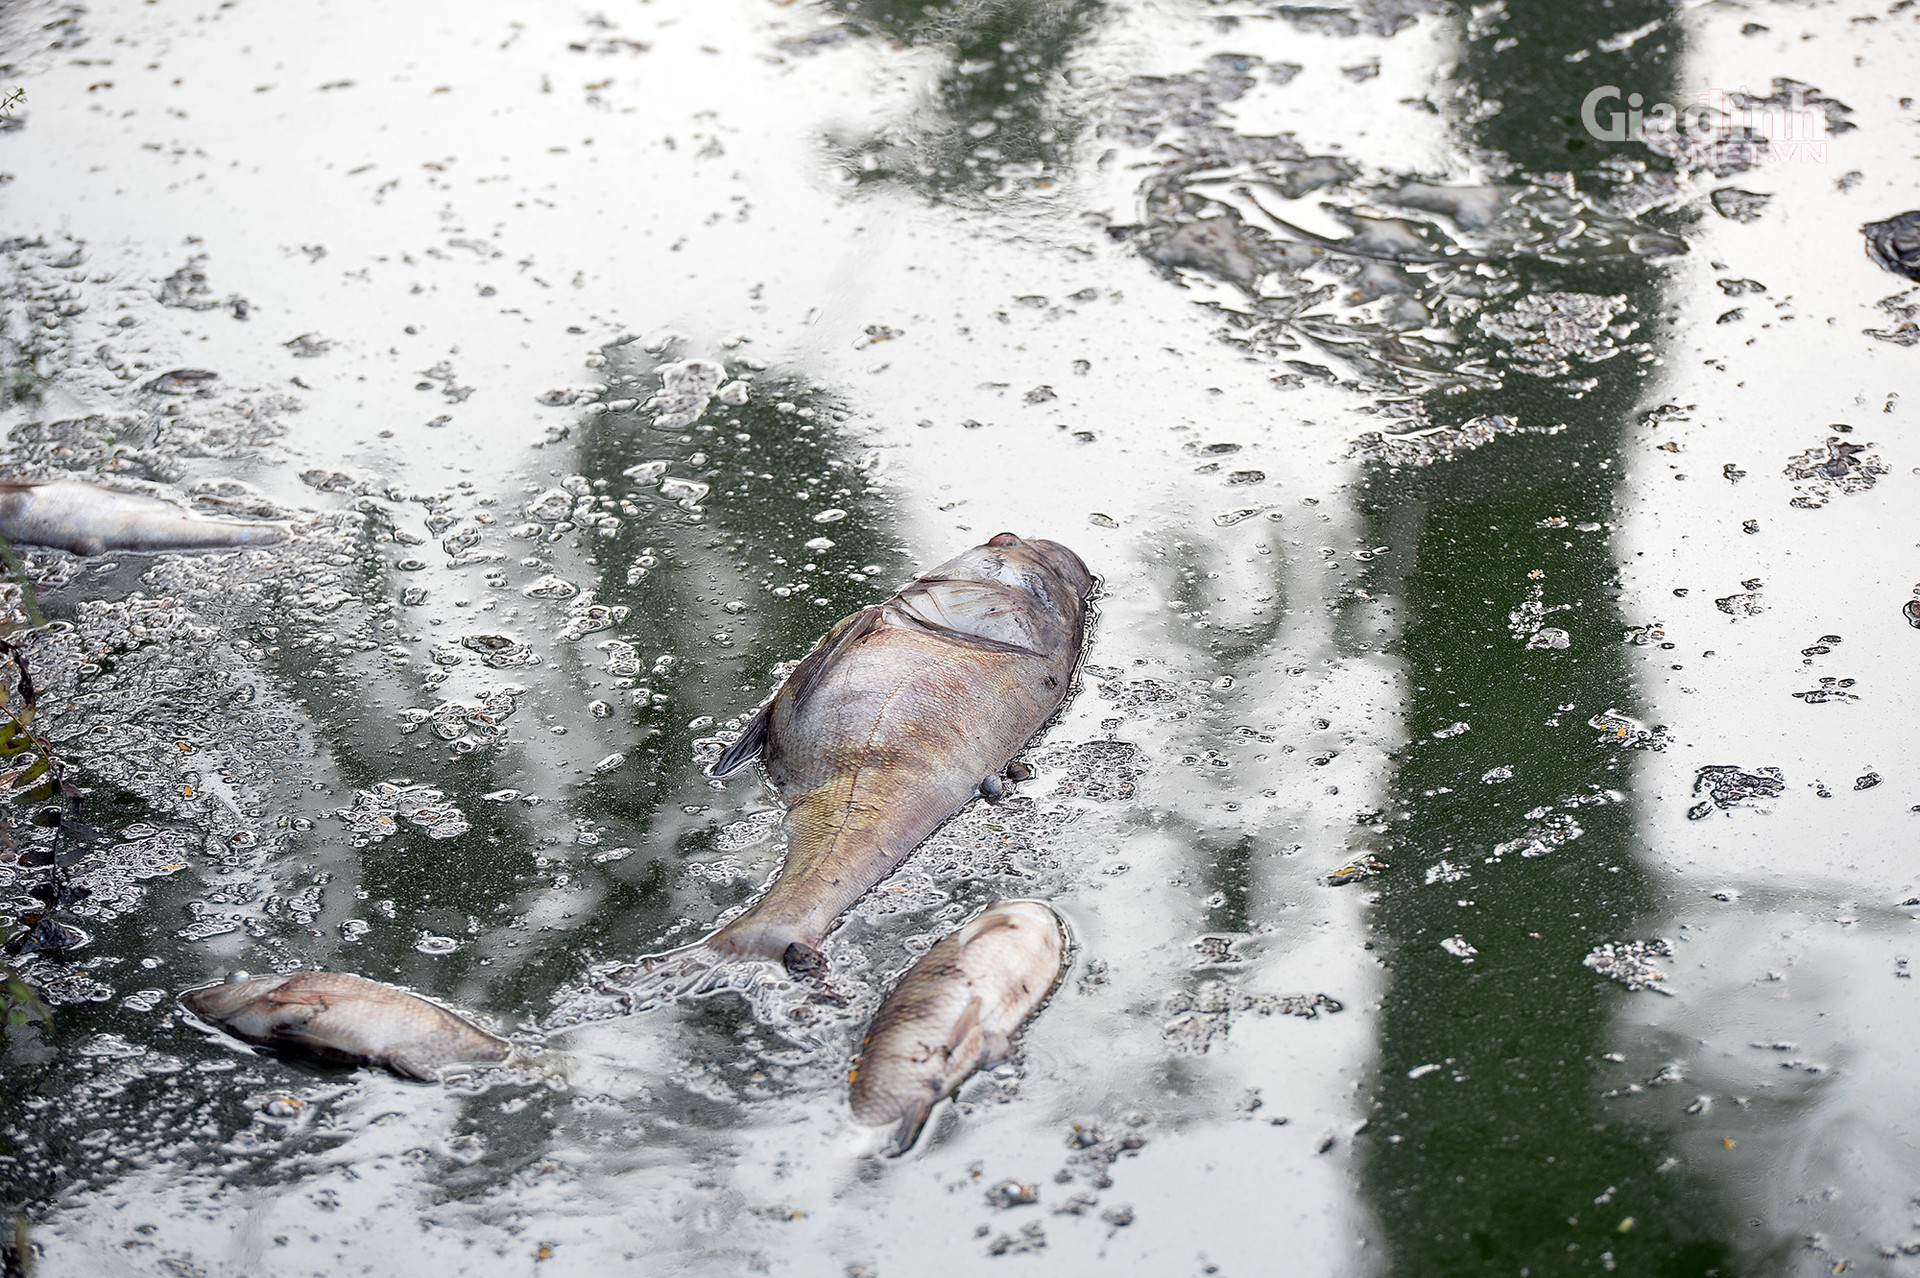 Hà Nội: Cá chết trắng ở Hồ Tây, cư dân chịu mùi hôi thối hơn 1 tuần qua - Ảnh 1.